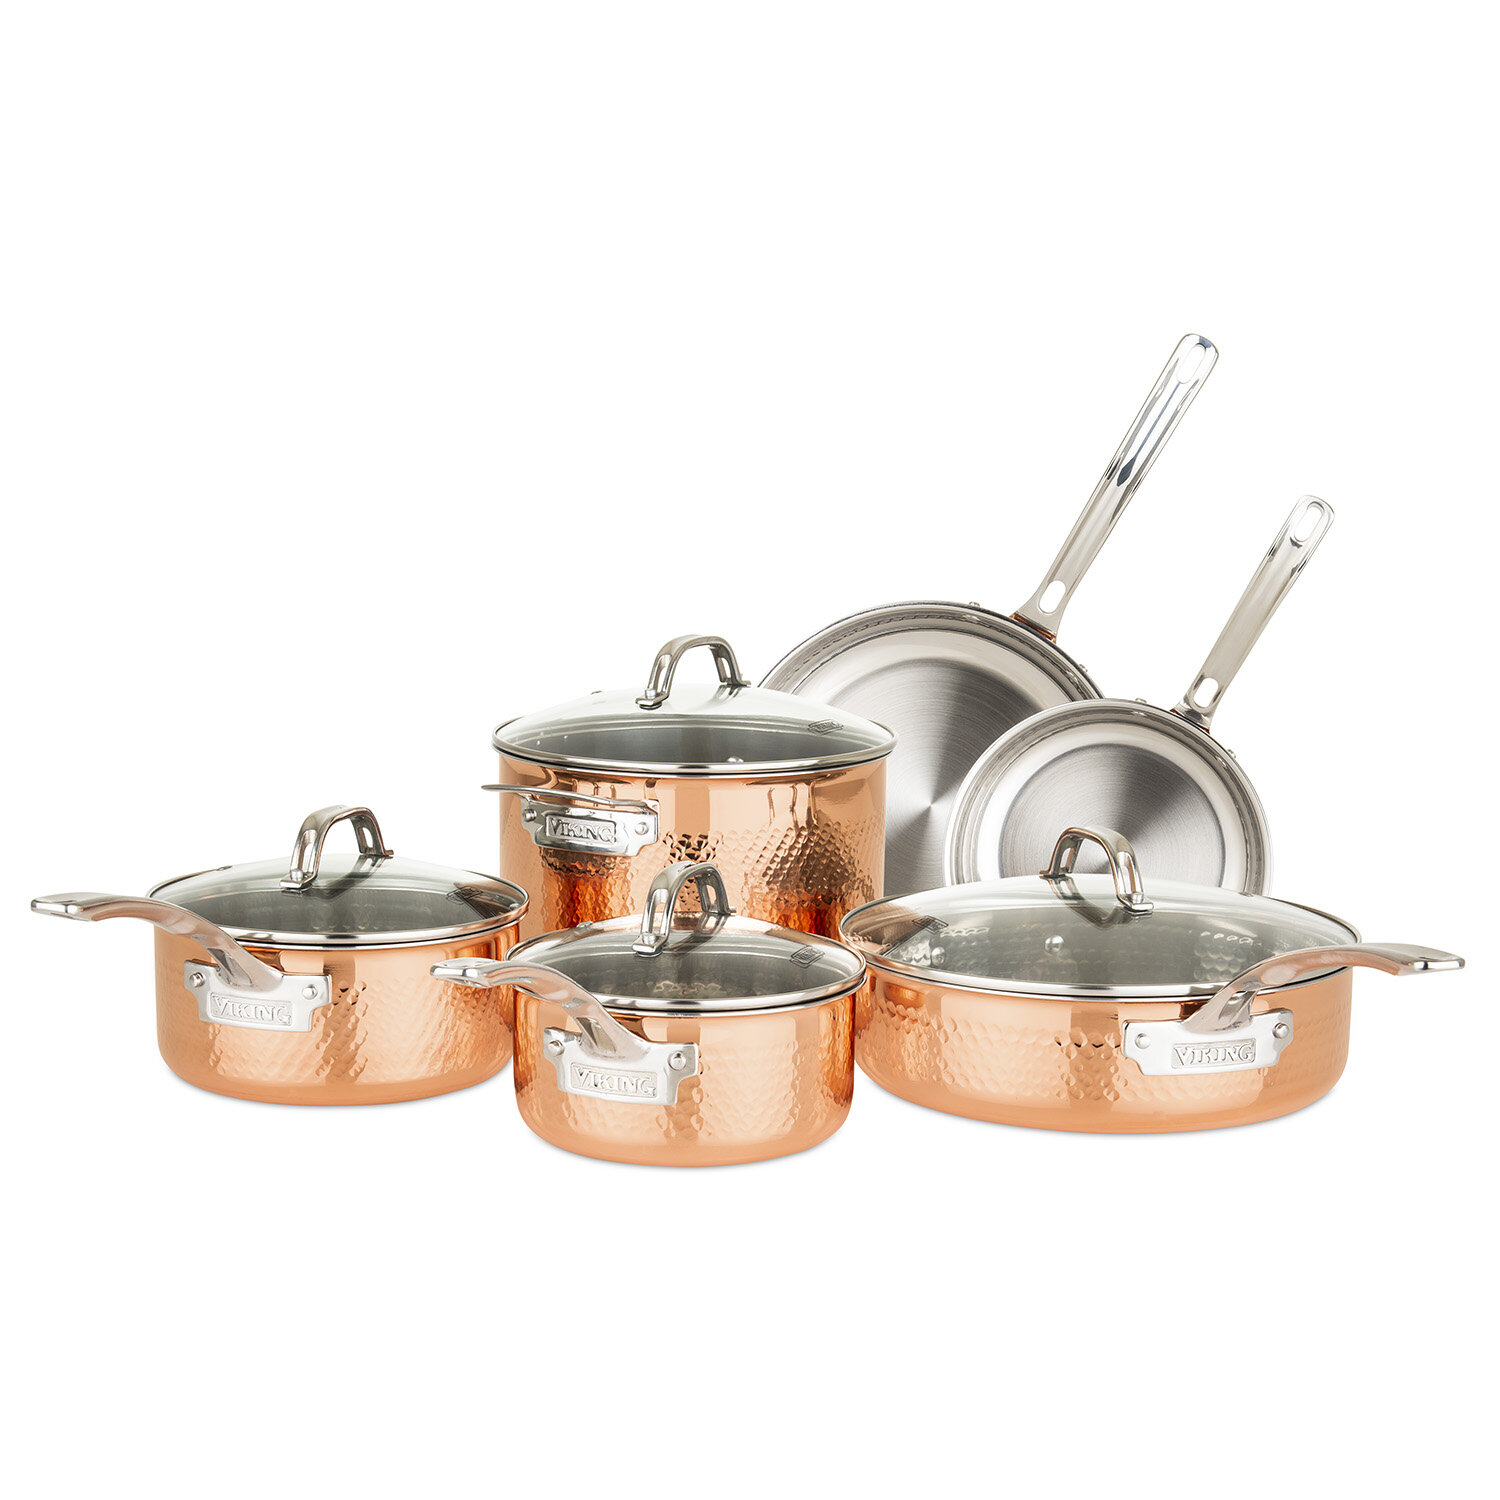 copper pots and pans australia